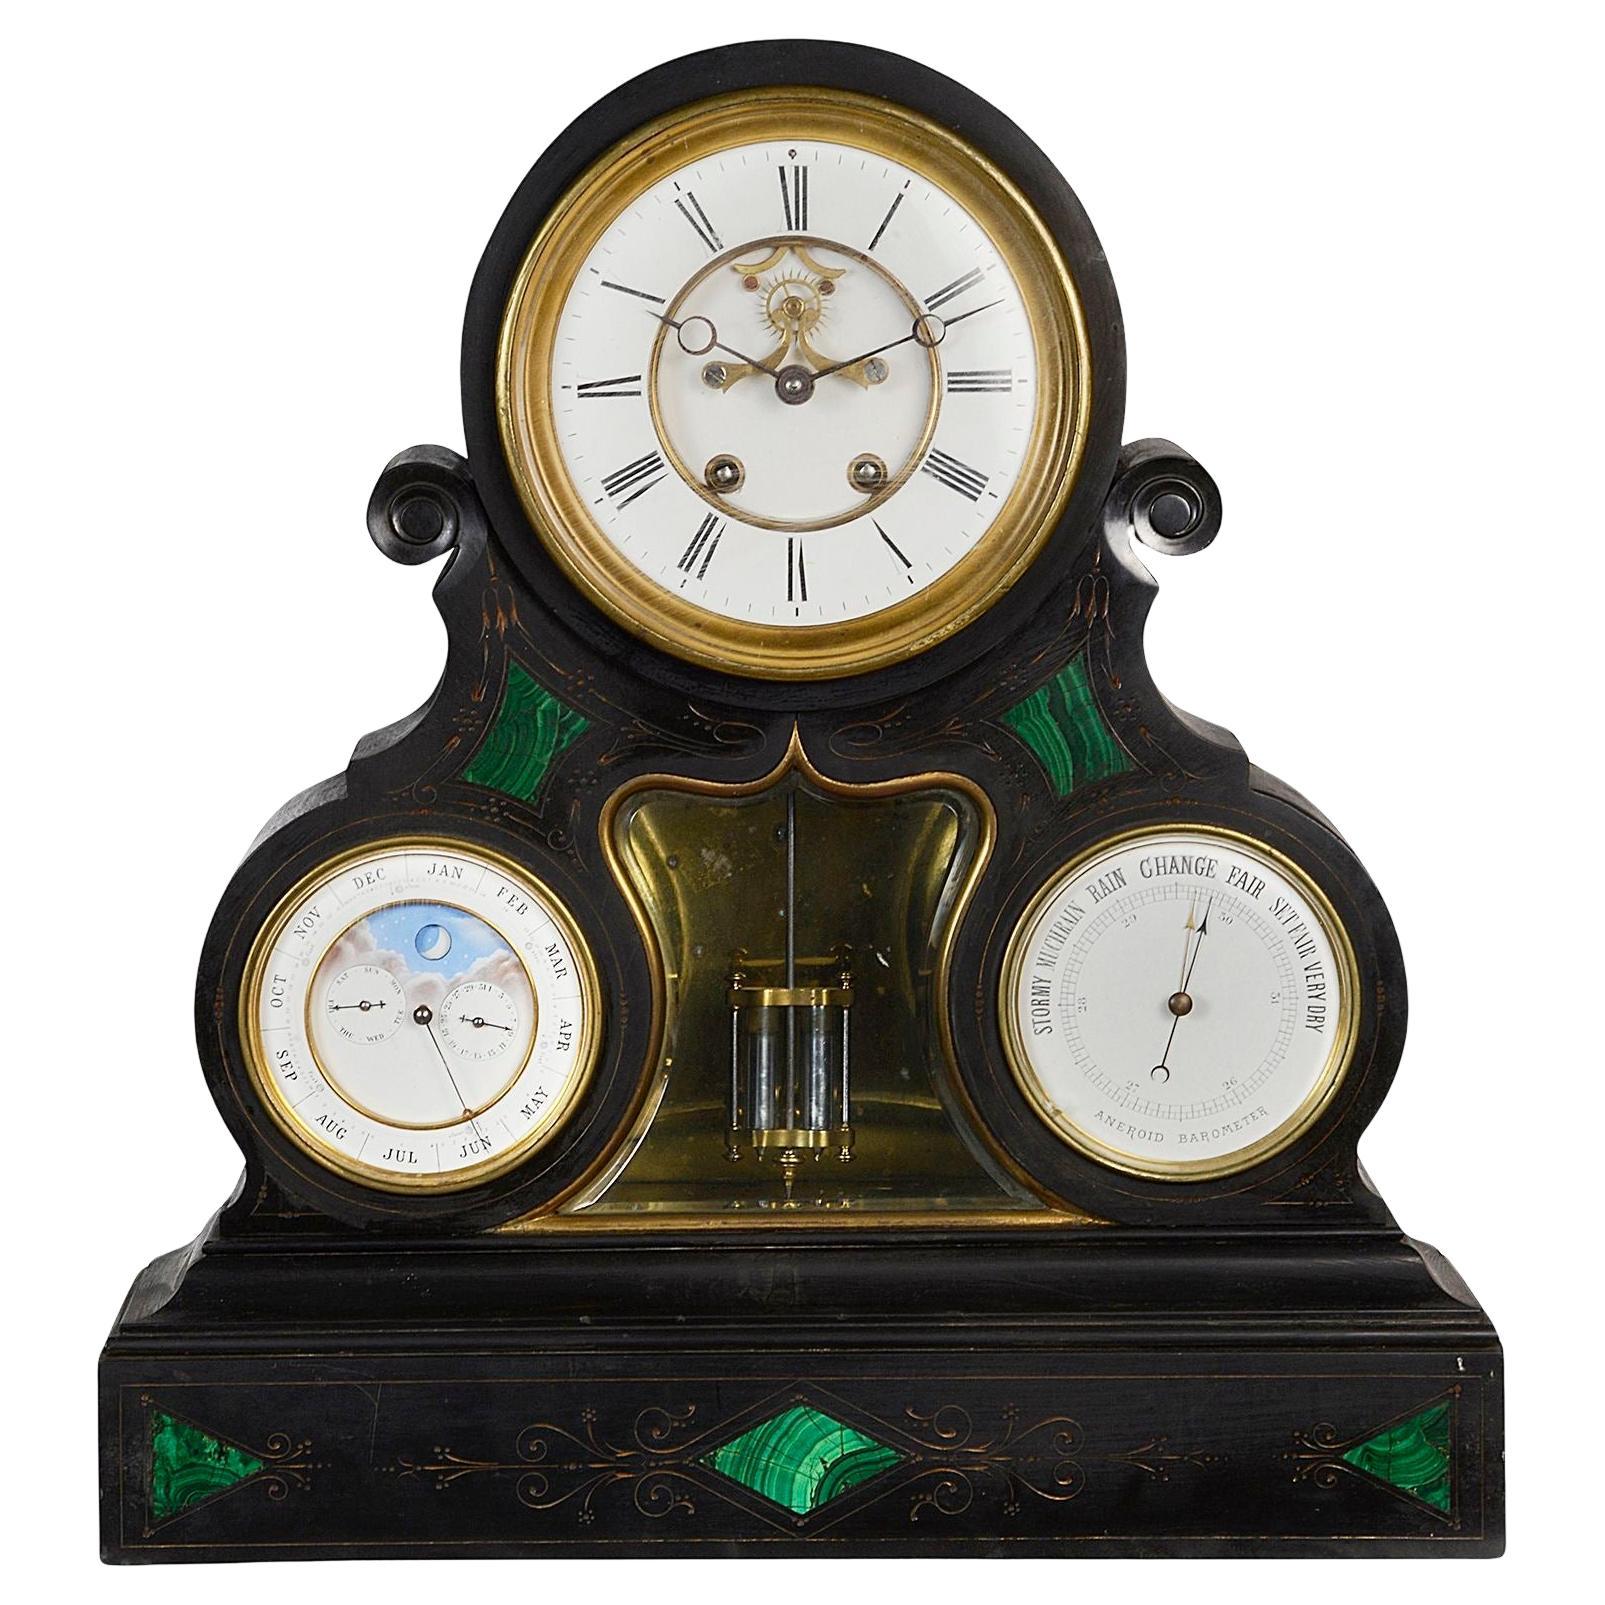 Fin du 19e siècle Horloge, baromètre et calendrier avec phase de lune.